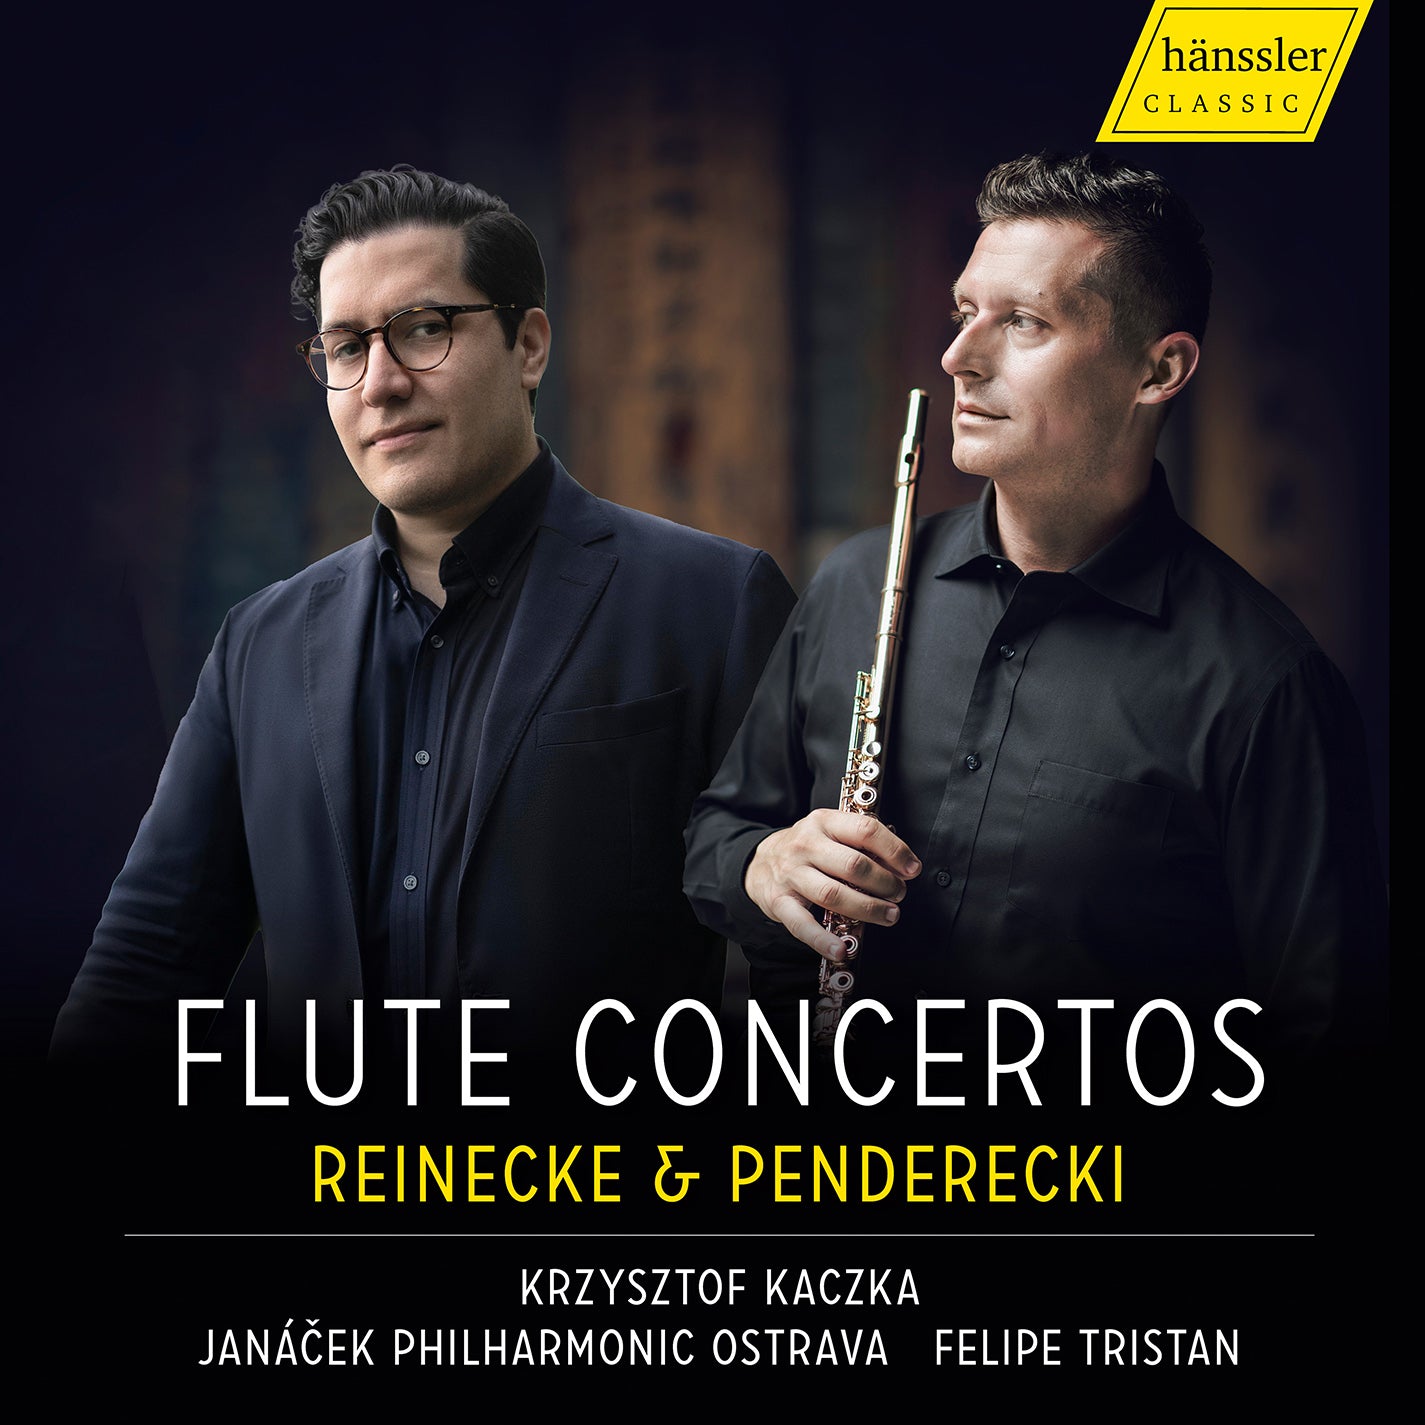 Reinecke & Penderecki: Flute Concertos